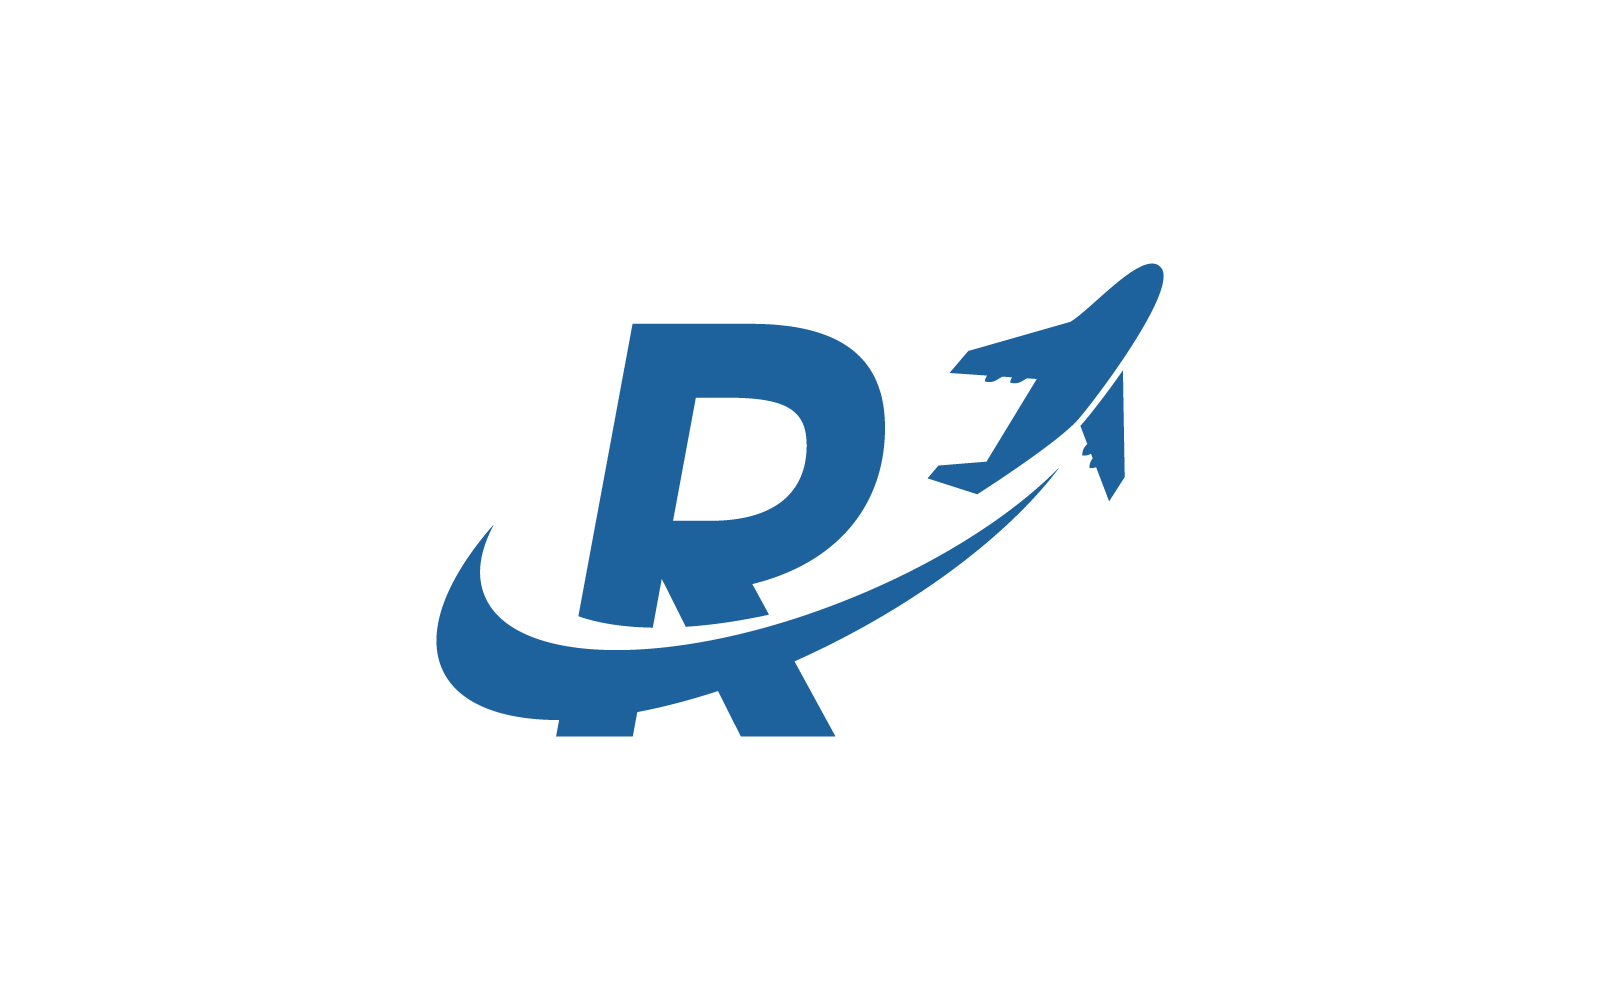 R ilk logo vektör şablonuna sahip Hava Uçağı